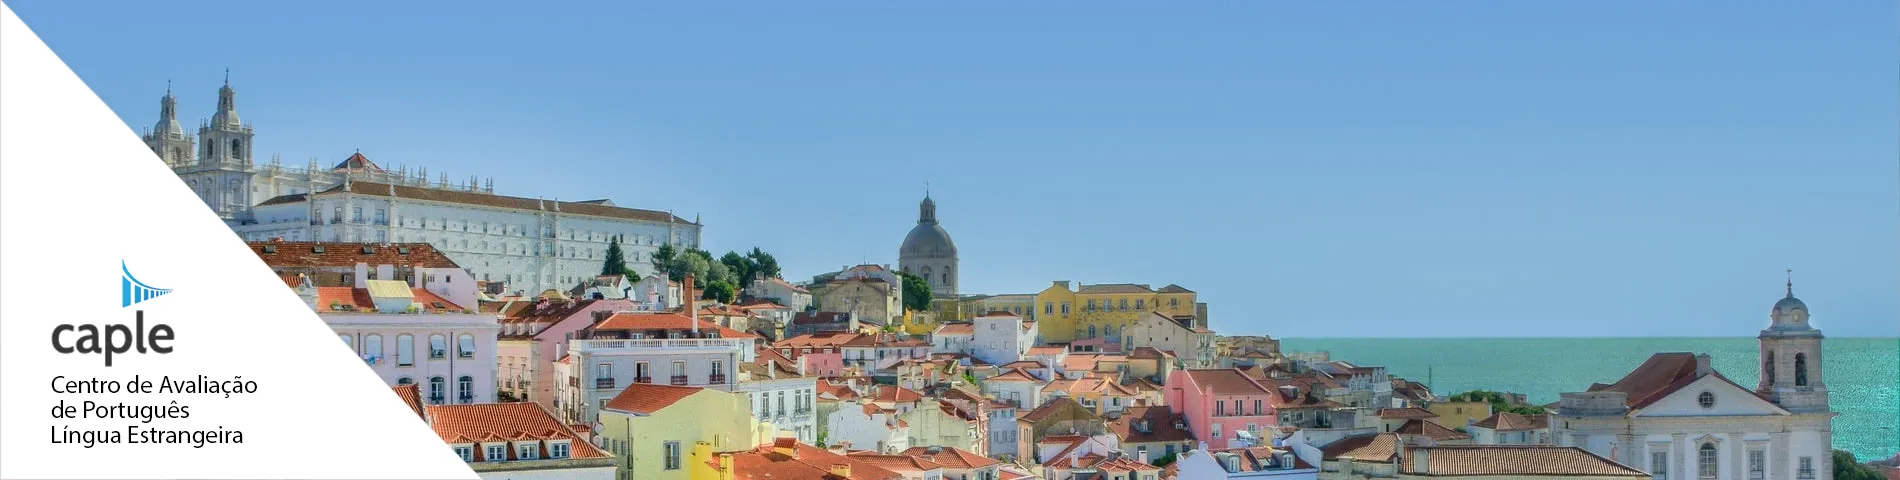 Lissabon - CAPLE